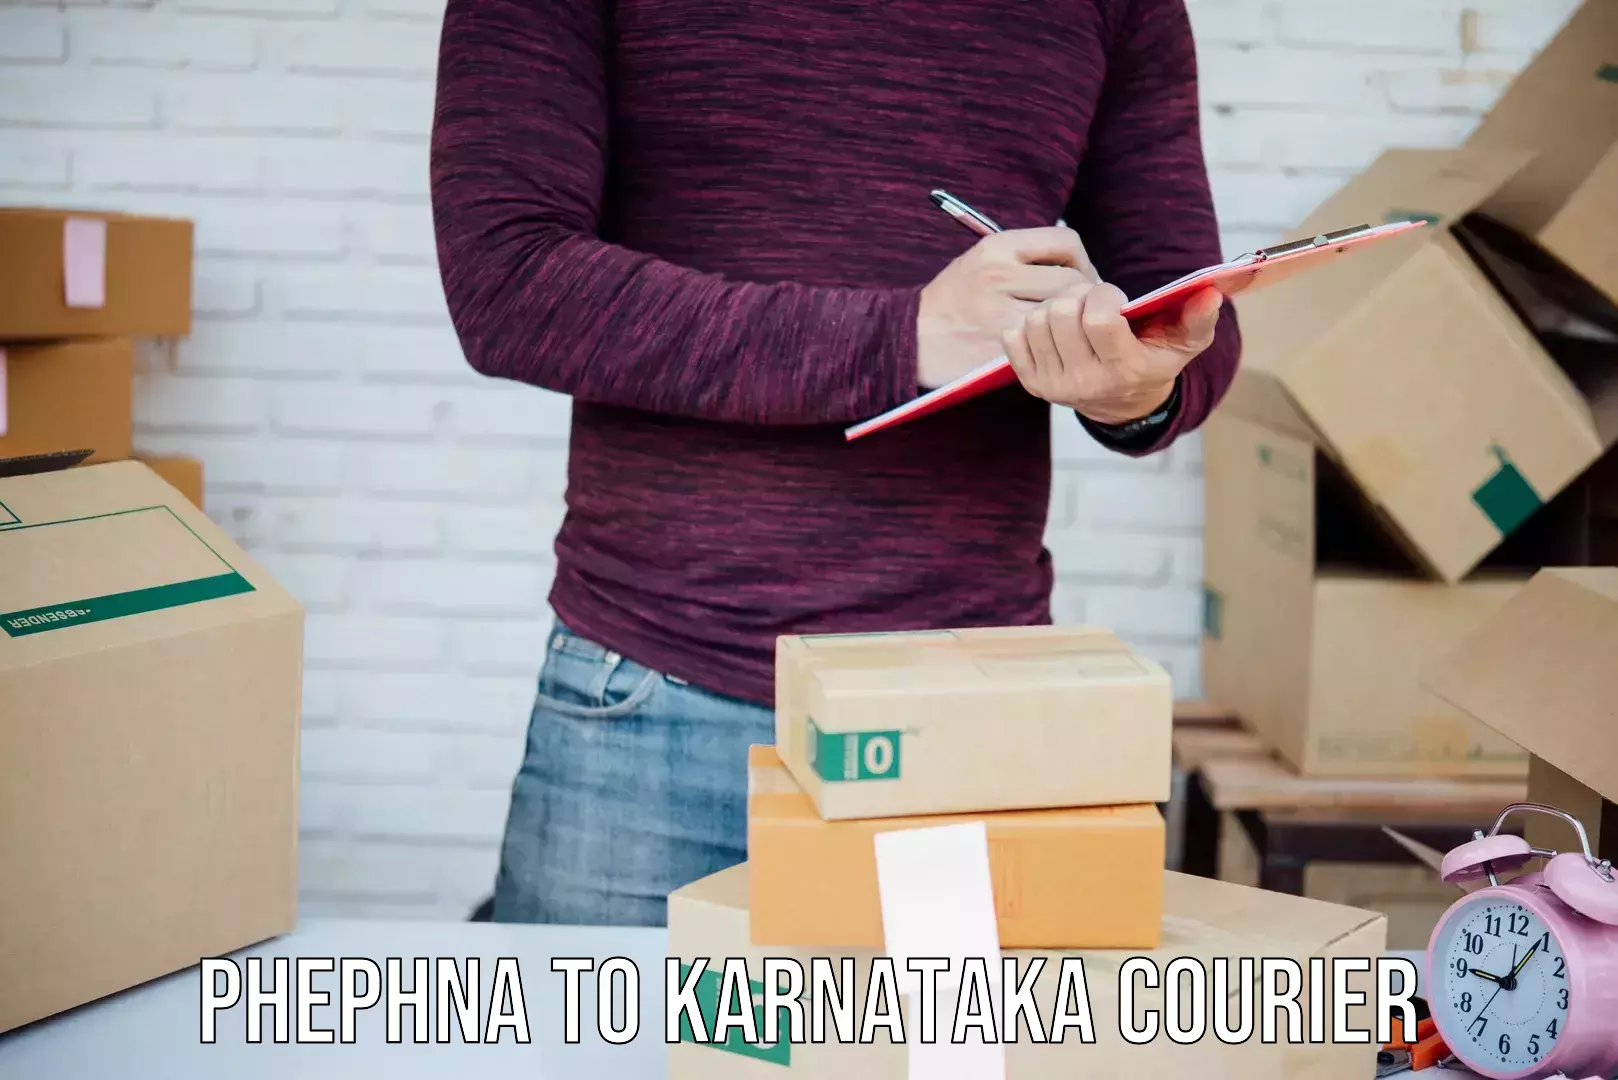 Fast delivery service Phephna to Ukkadagatri